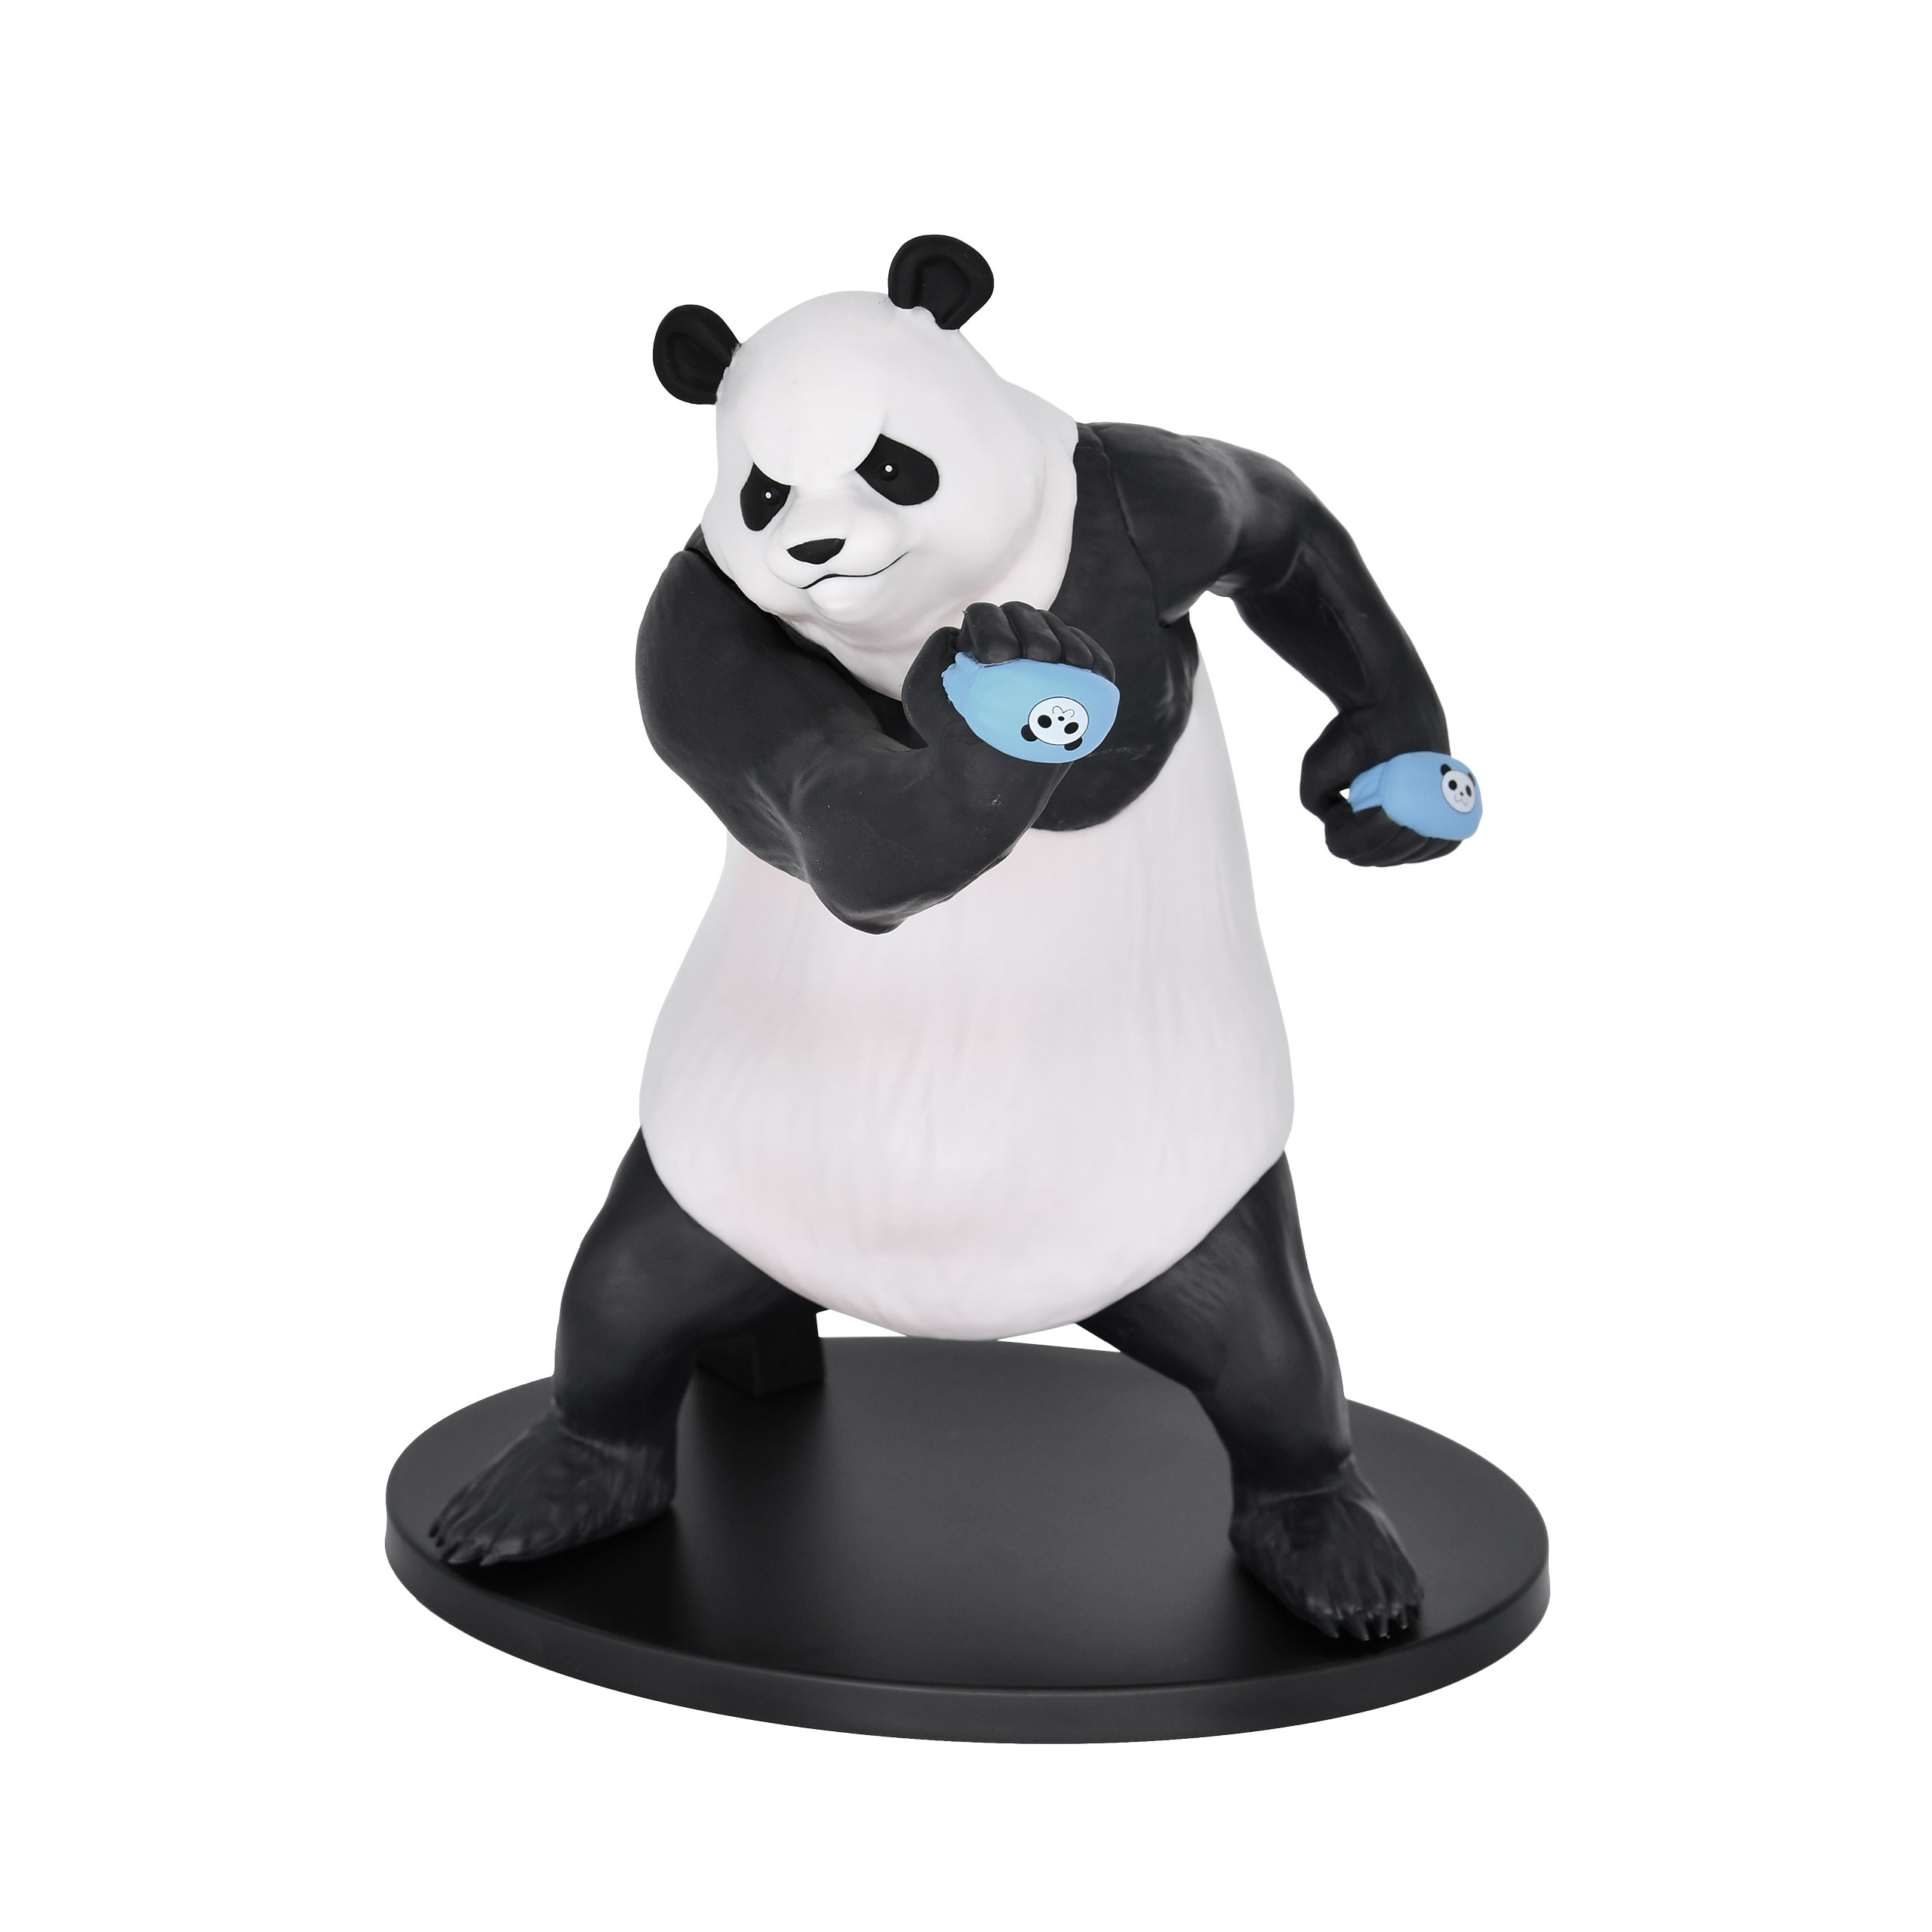 Jujutsu Kaisen - Panda Figure Version B